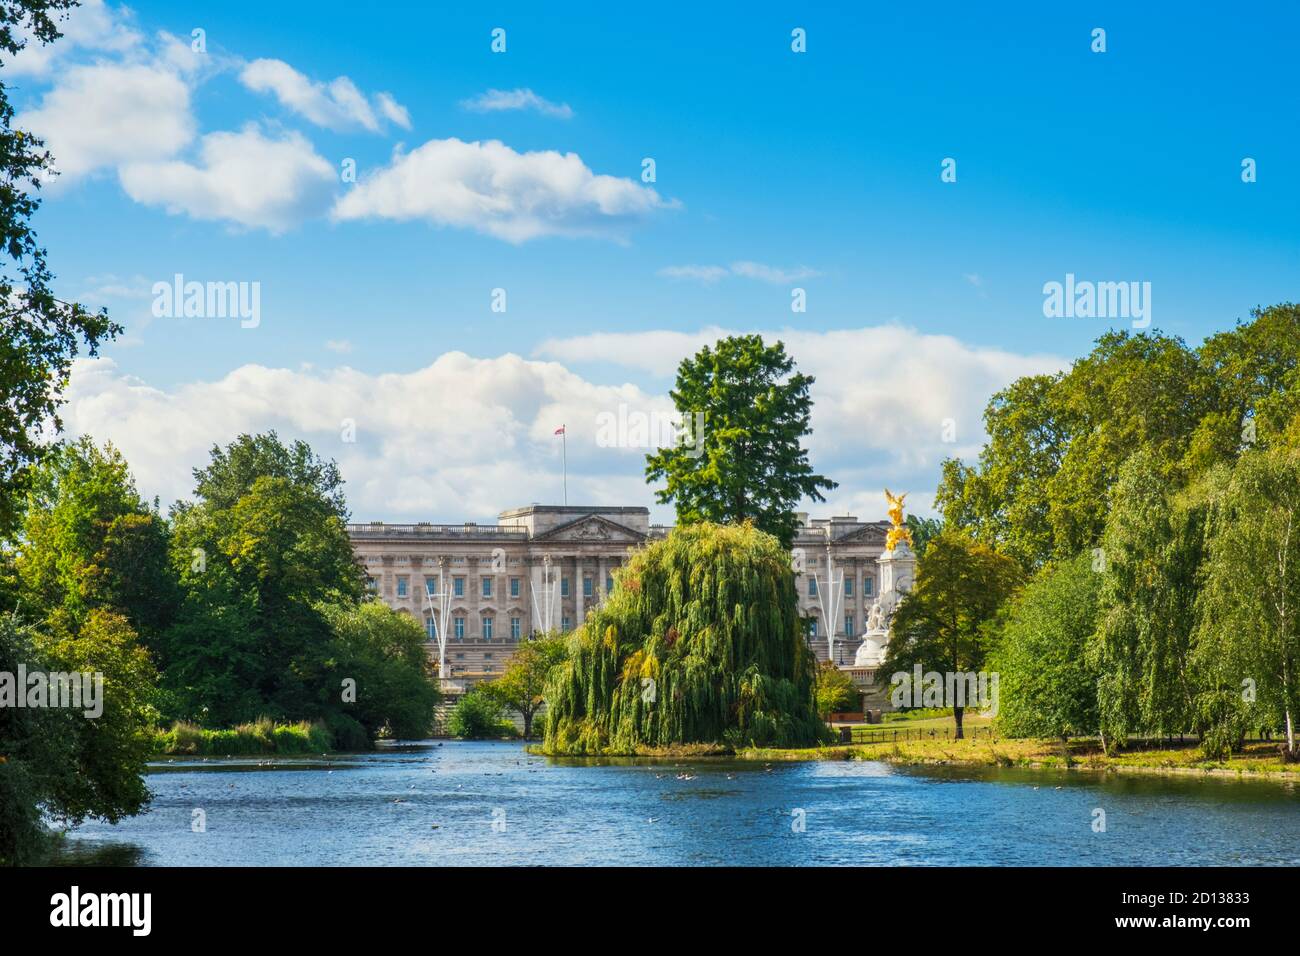 Reino Unido, Londres, Westminster. La fachada del Palacio de Buckingham y el parque y el lago de St James Foto de stock